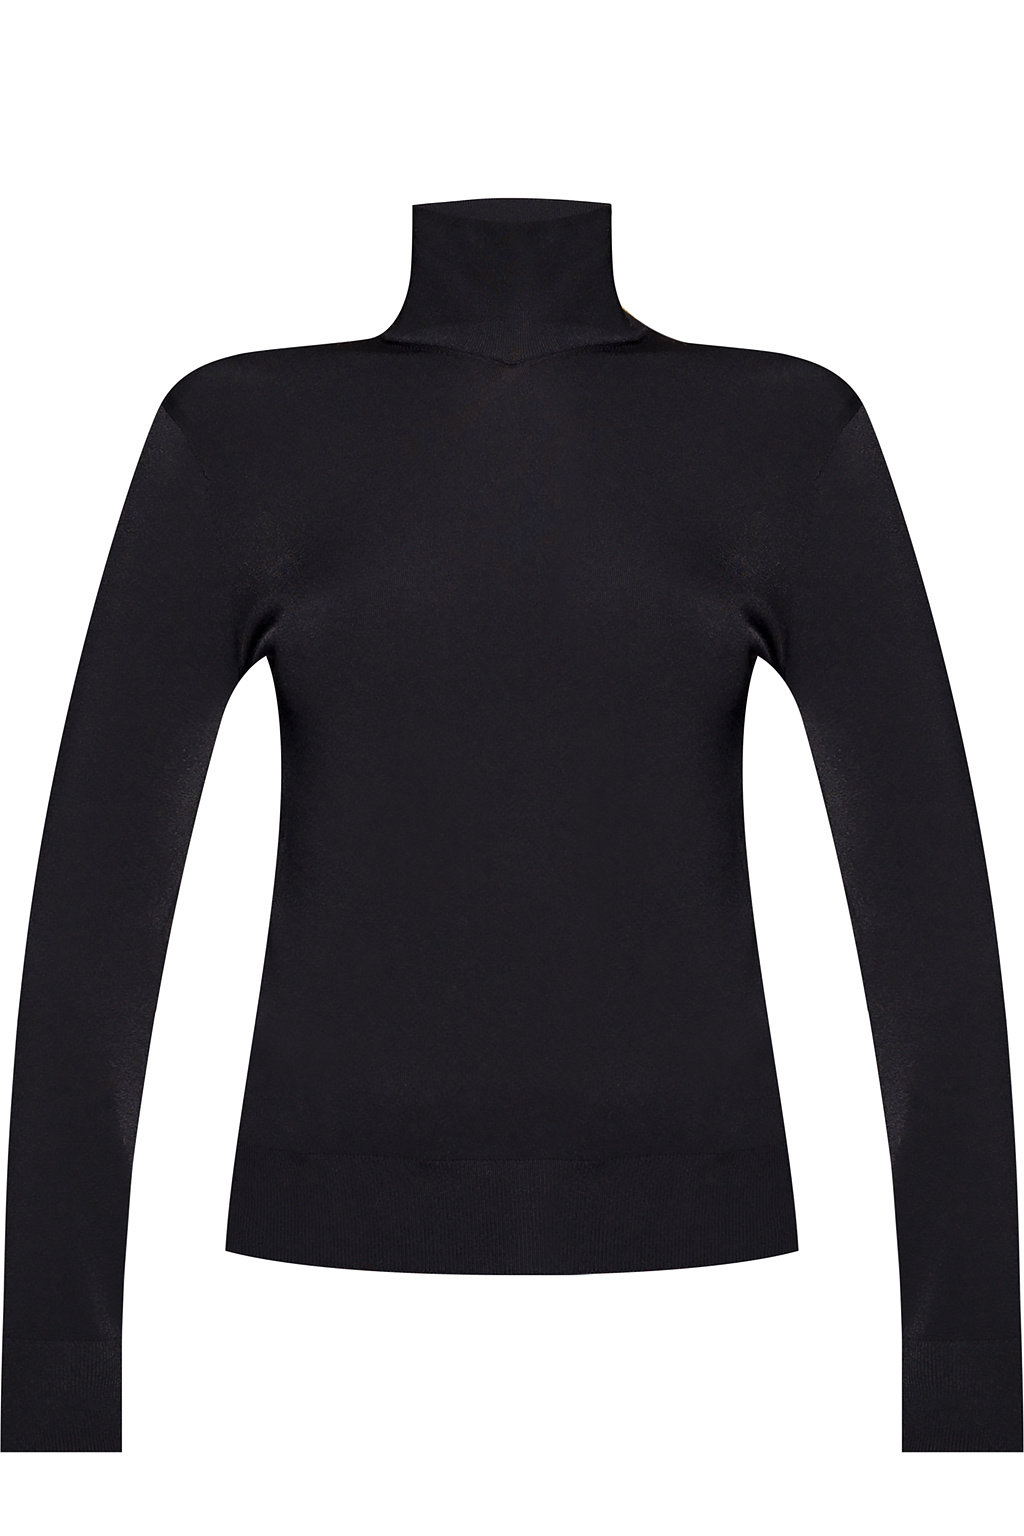 Bottega Veneta crew neck short-sleeve T-shirt Verde | Bottega Veneta  Turtleneck top | Women's Clothing | IetpShops